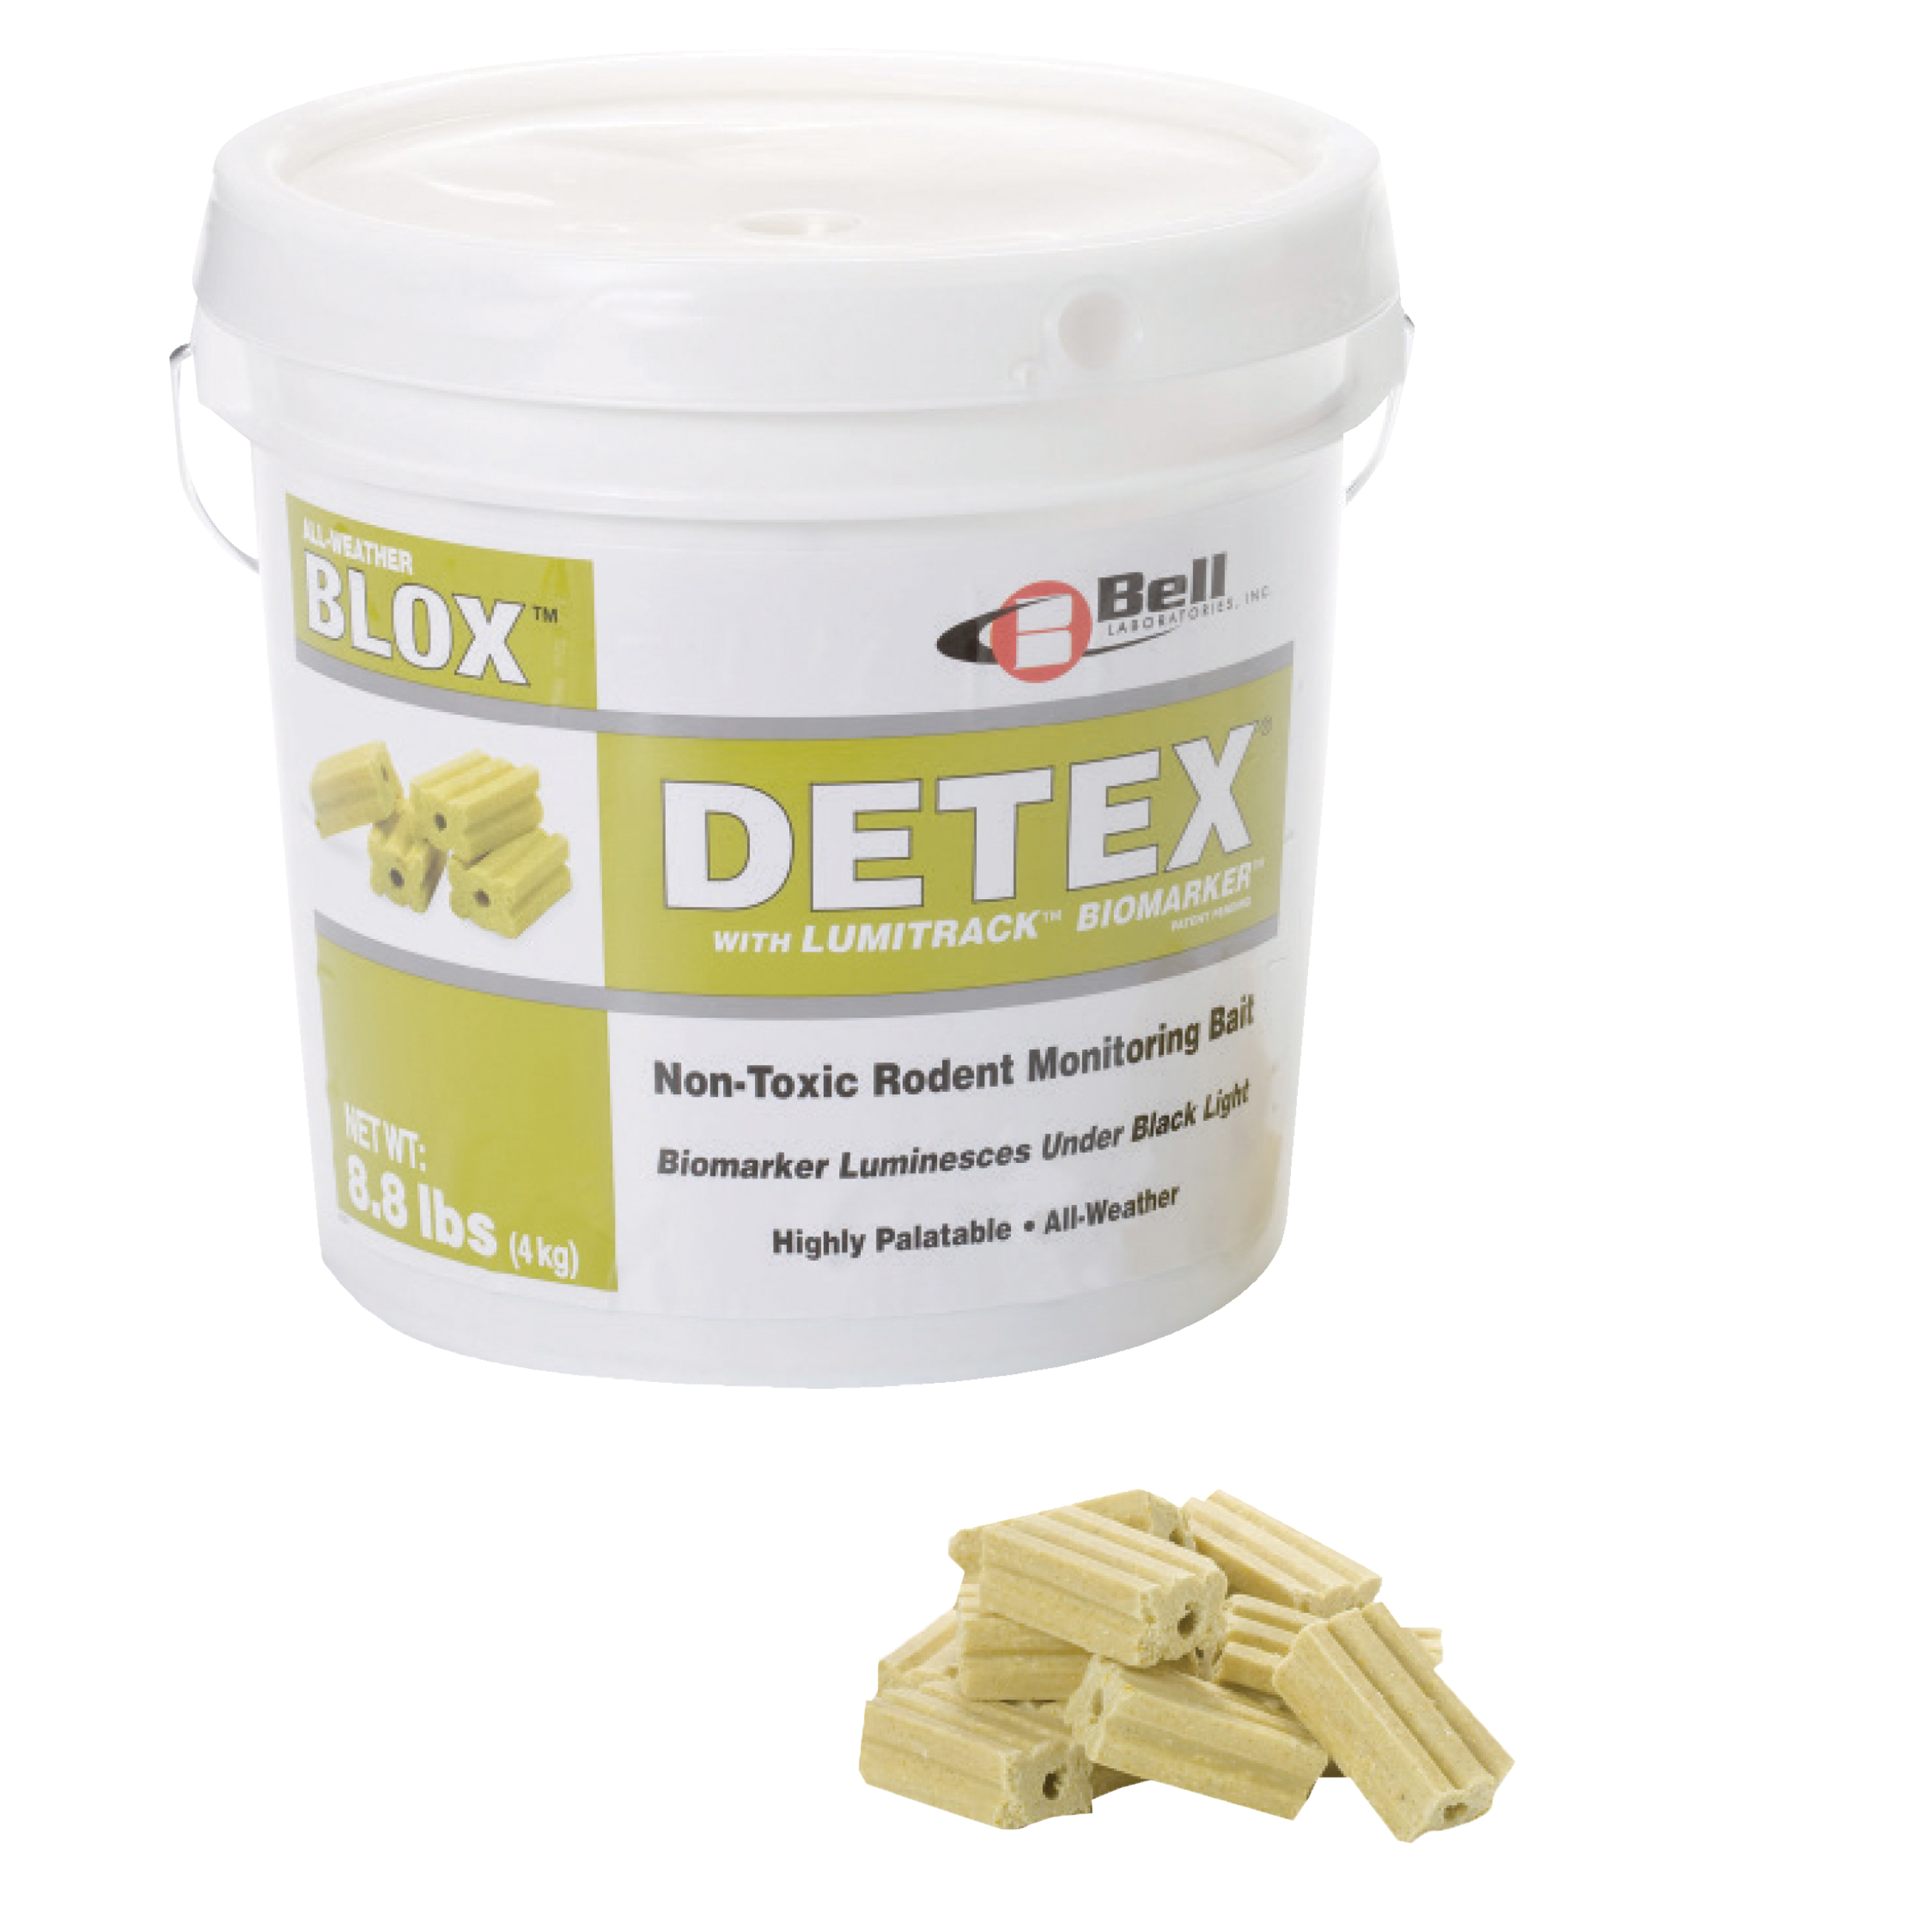 Detex Biomarker Blox, 4Kg